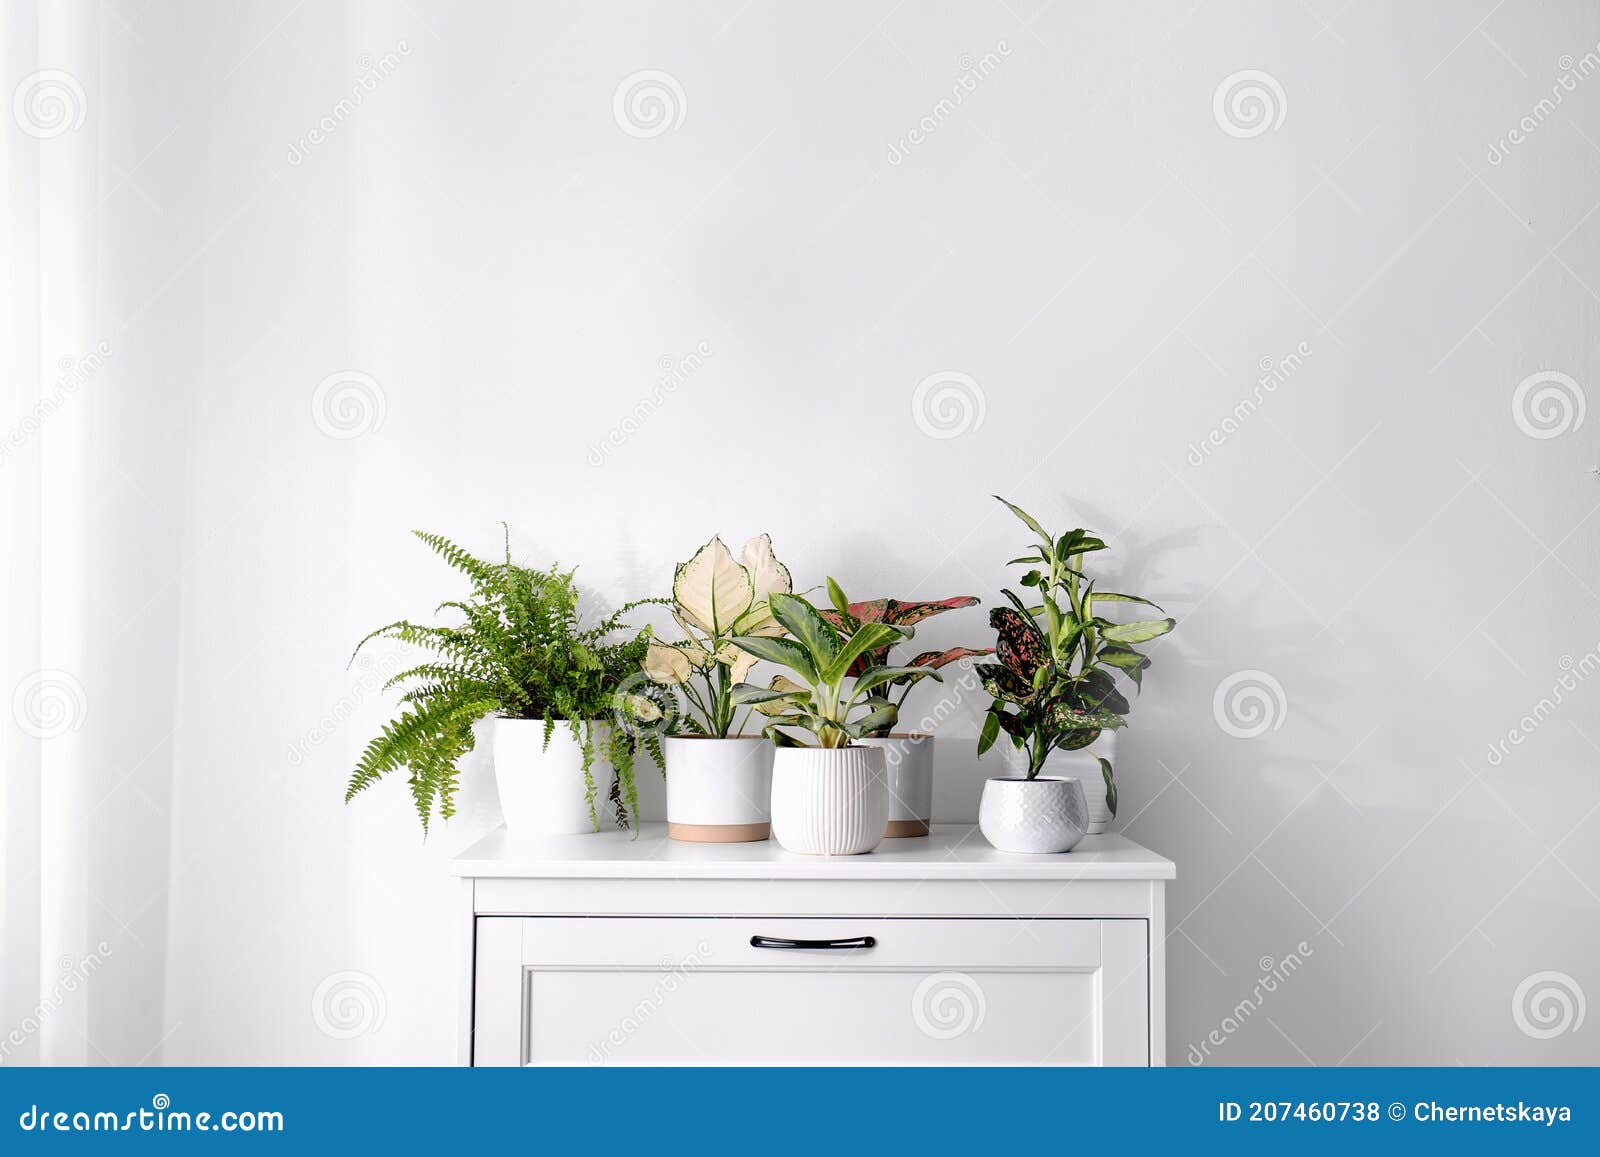 Комнатные Растения С Красивыми Листьями Фото